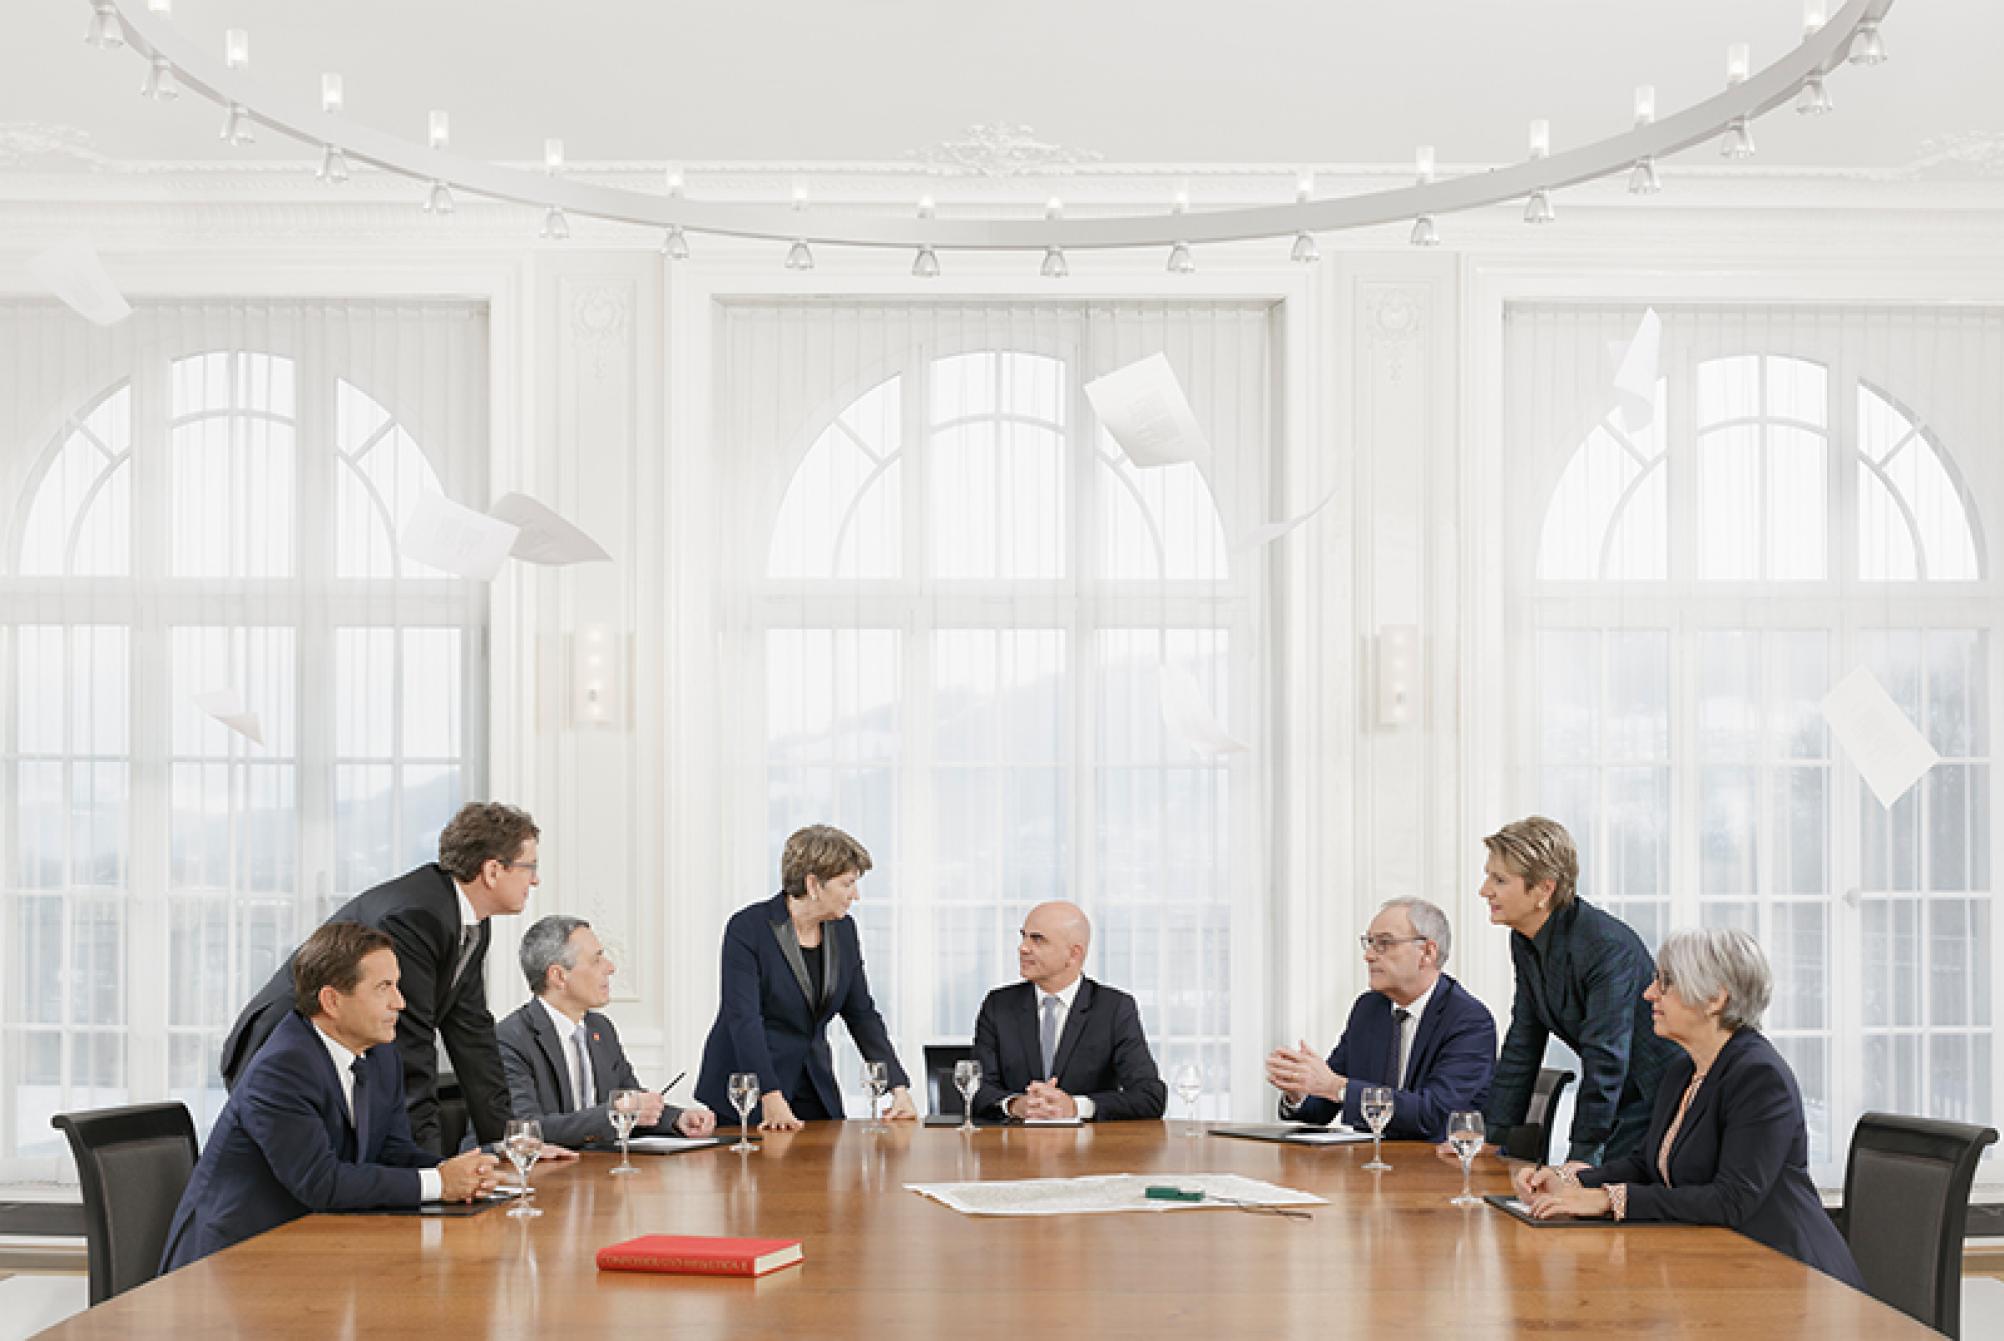 Das Bild zeigt das offizielle Bundesratsfoto 2023 mit den sieben Mitgliedern des Bundesrats und dem Bundeskanzler. Sie sitzen alle an einem runden Tisch und sprechen miteinander.